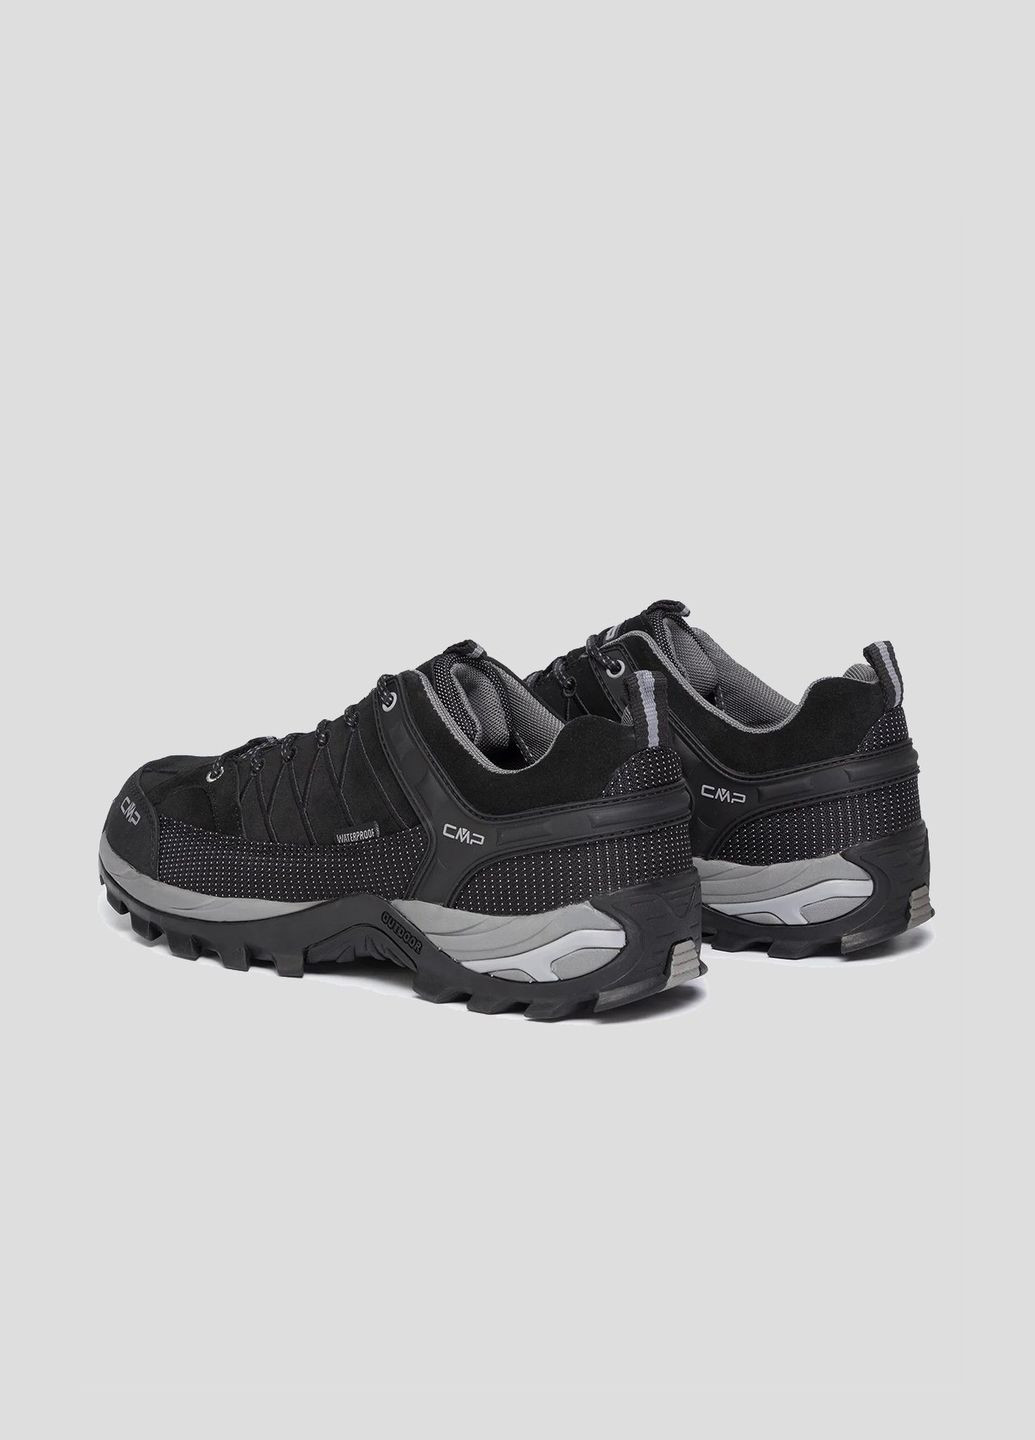 Черные демисезонные черные кроссовки rigel low trekking shoes wp CMP